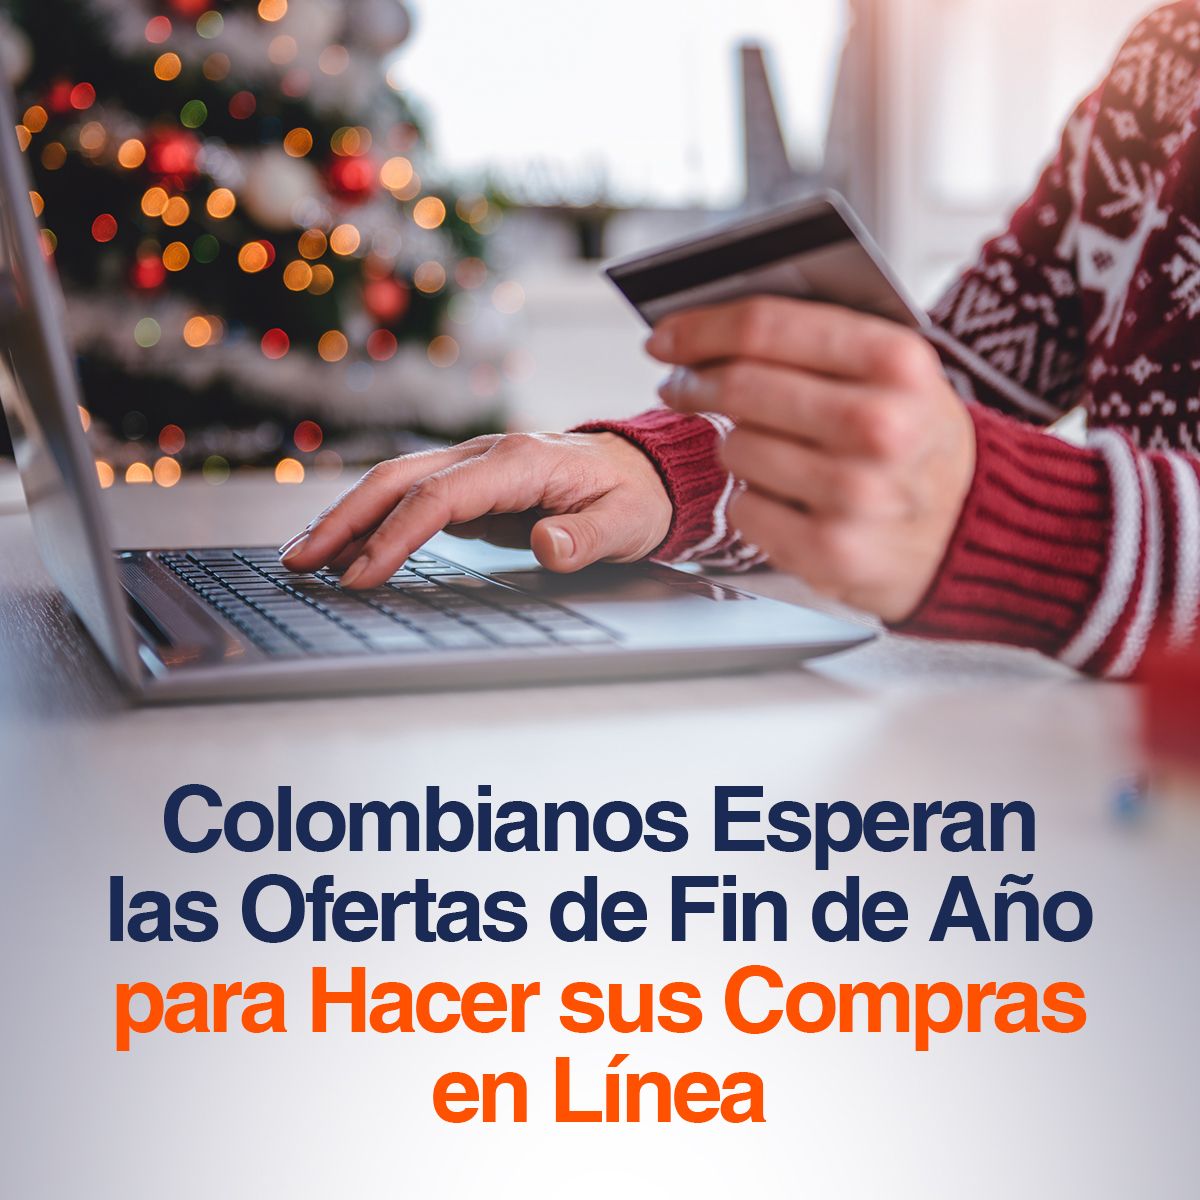 Colombianos Esperan las Ofertas de Fin de Año para Hacer sus Compras en Línea